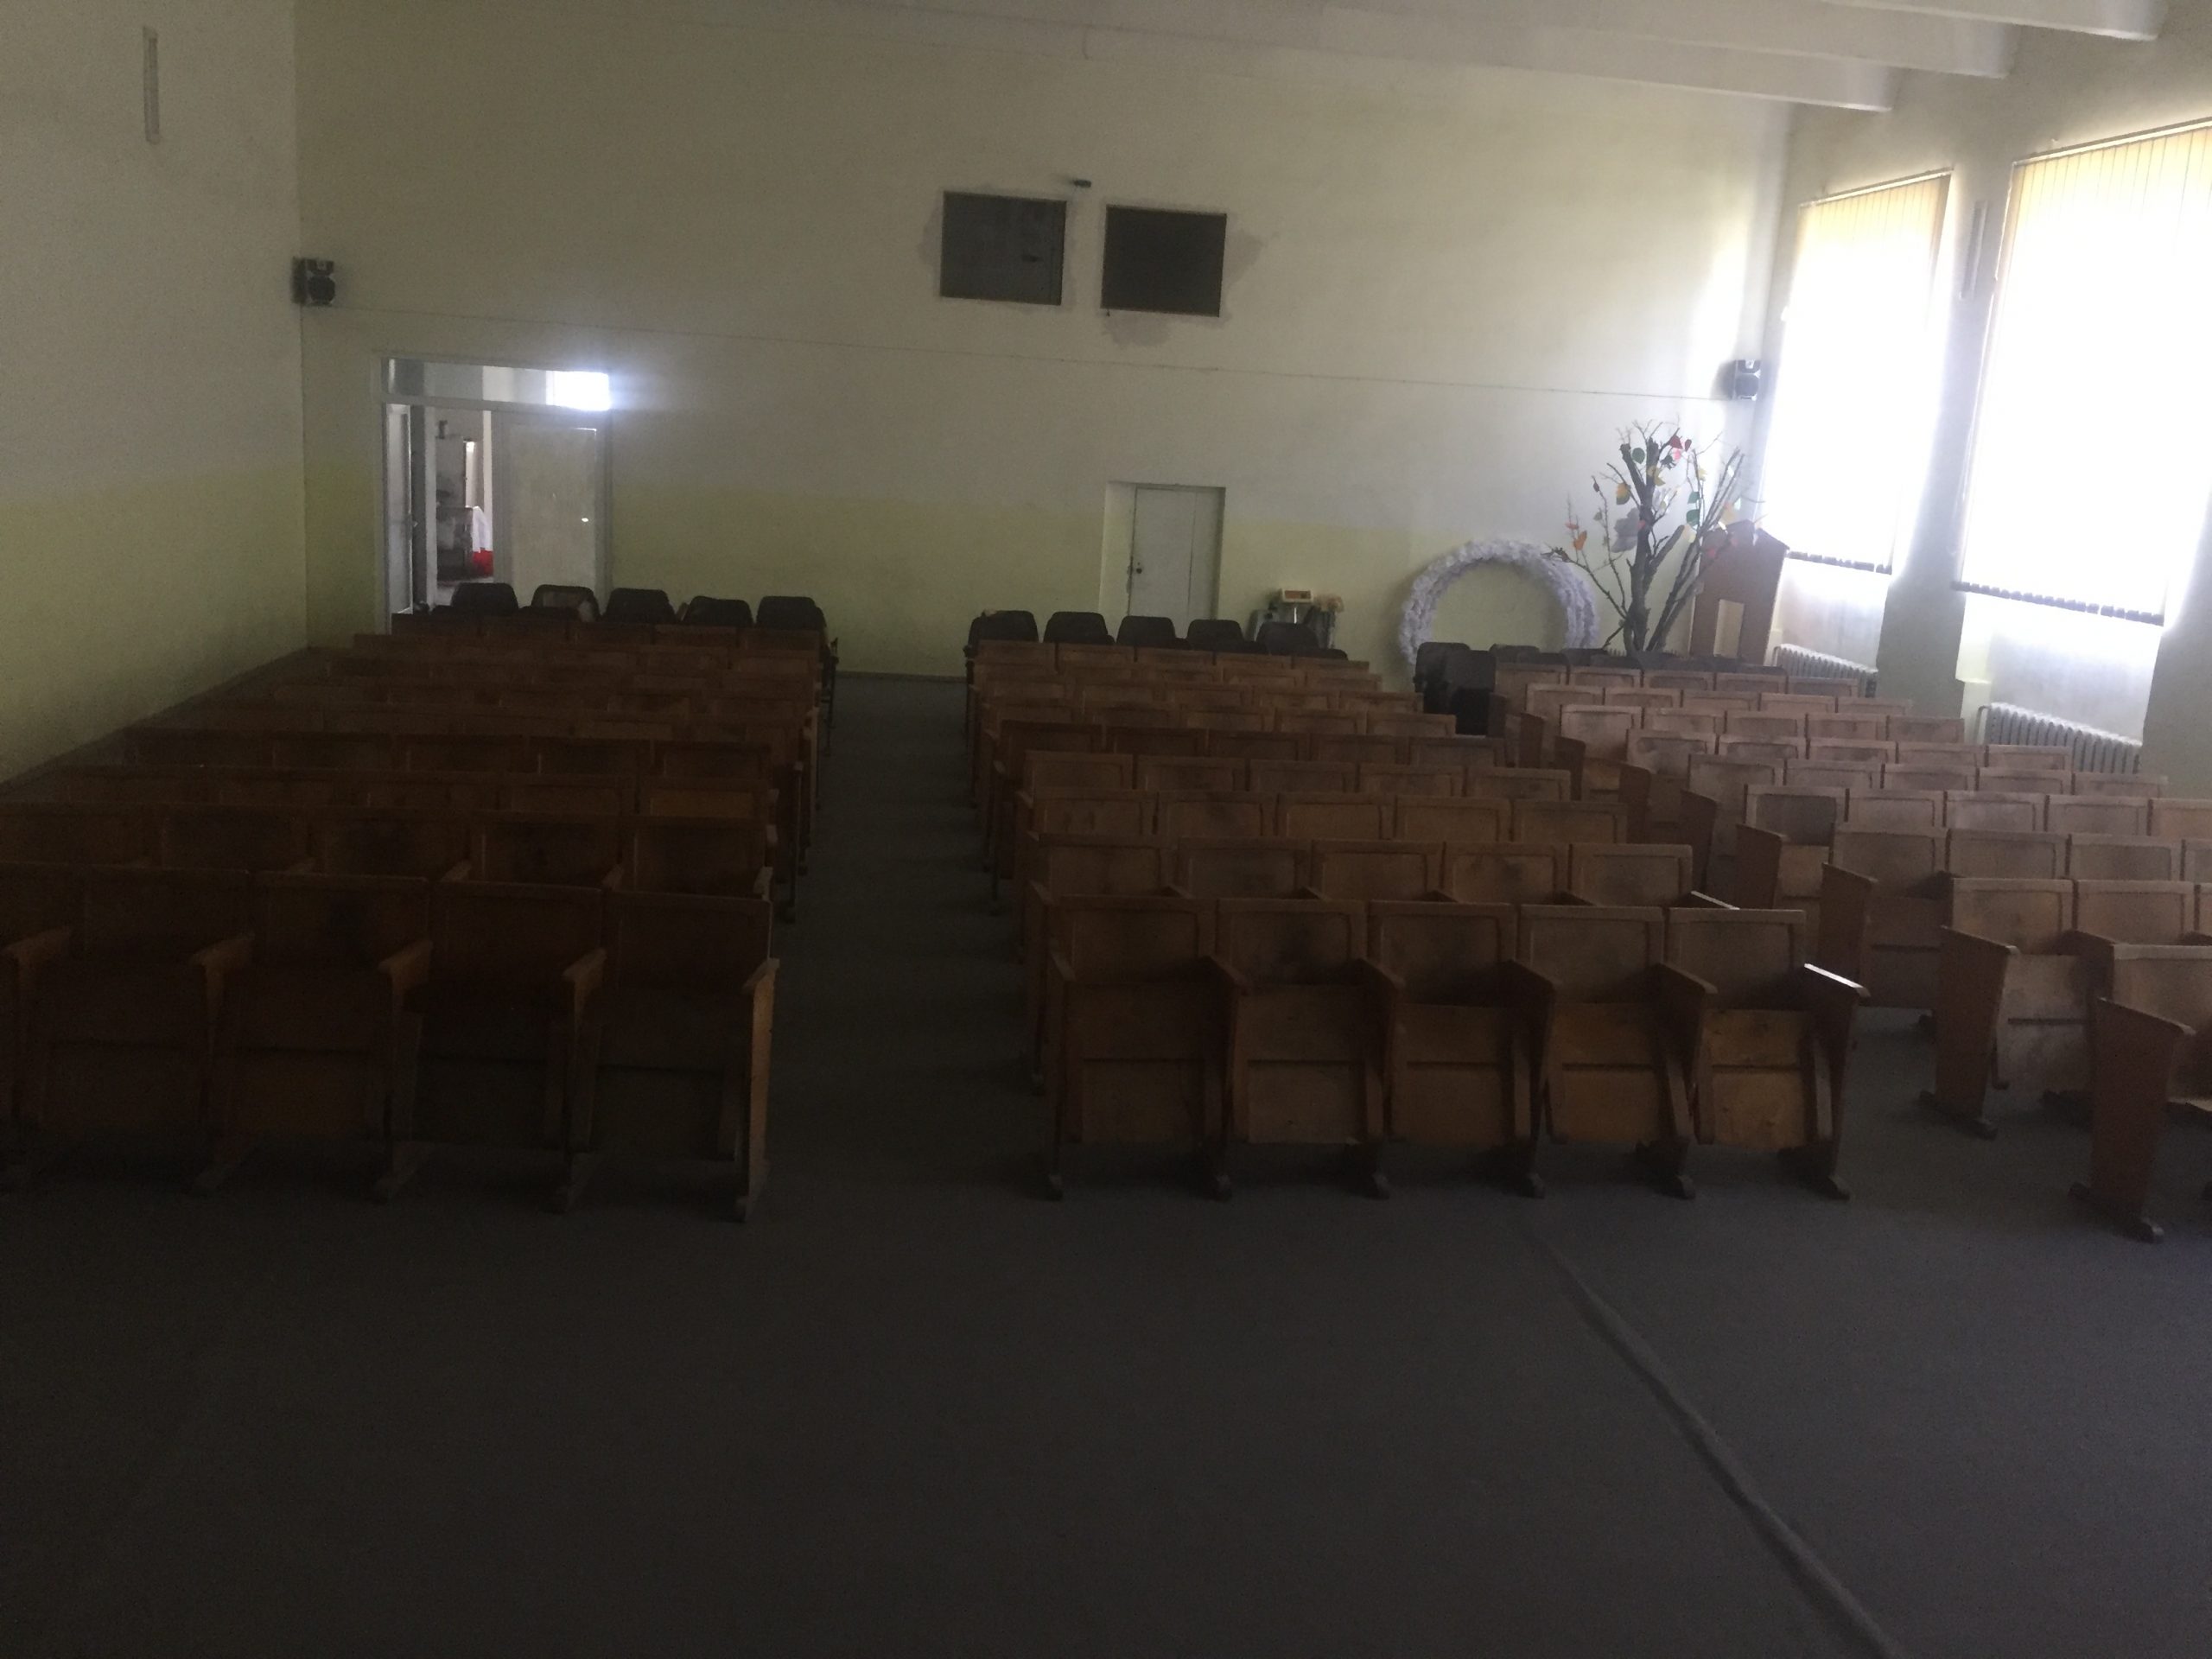 KV-school-auditorium-3-scaled